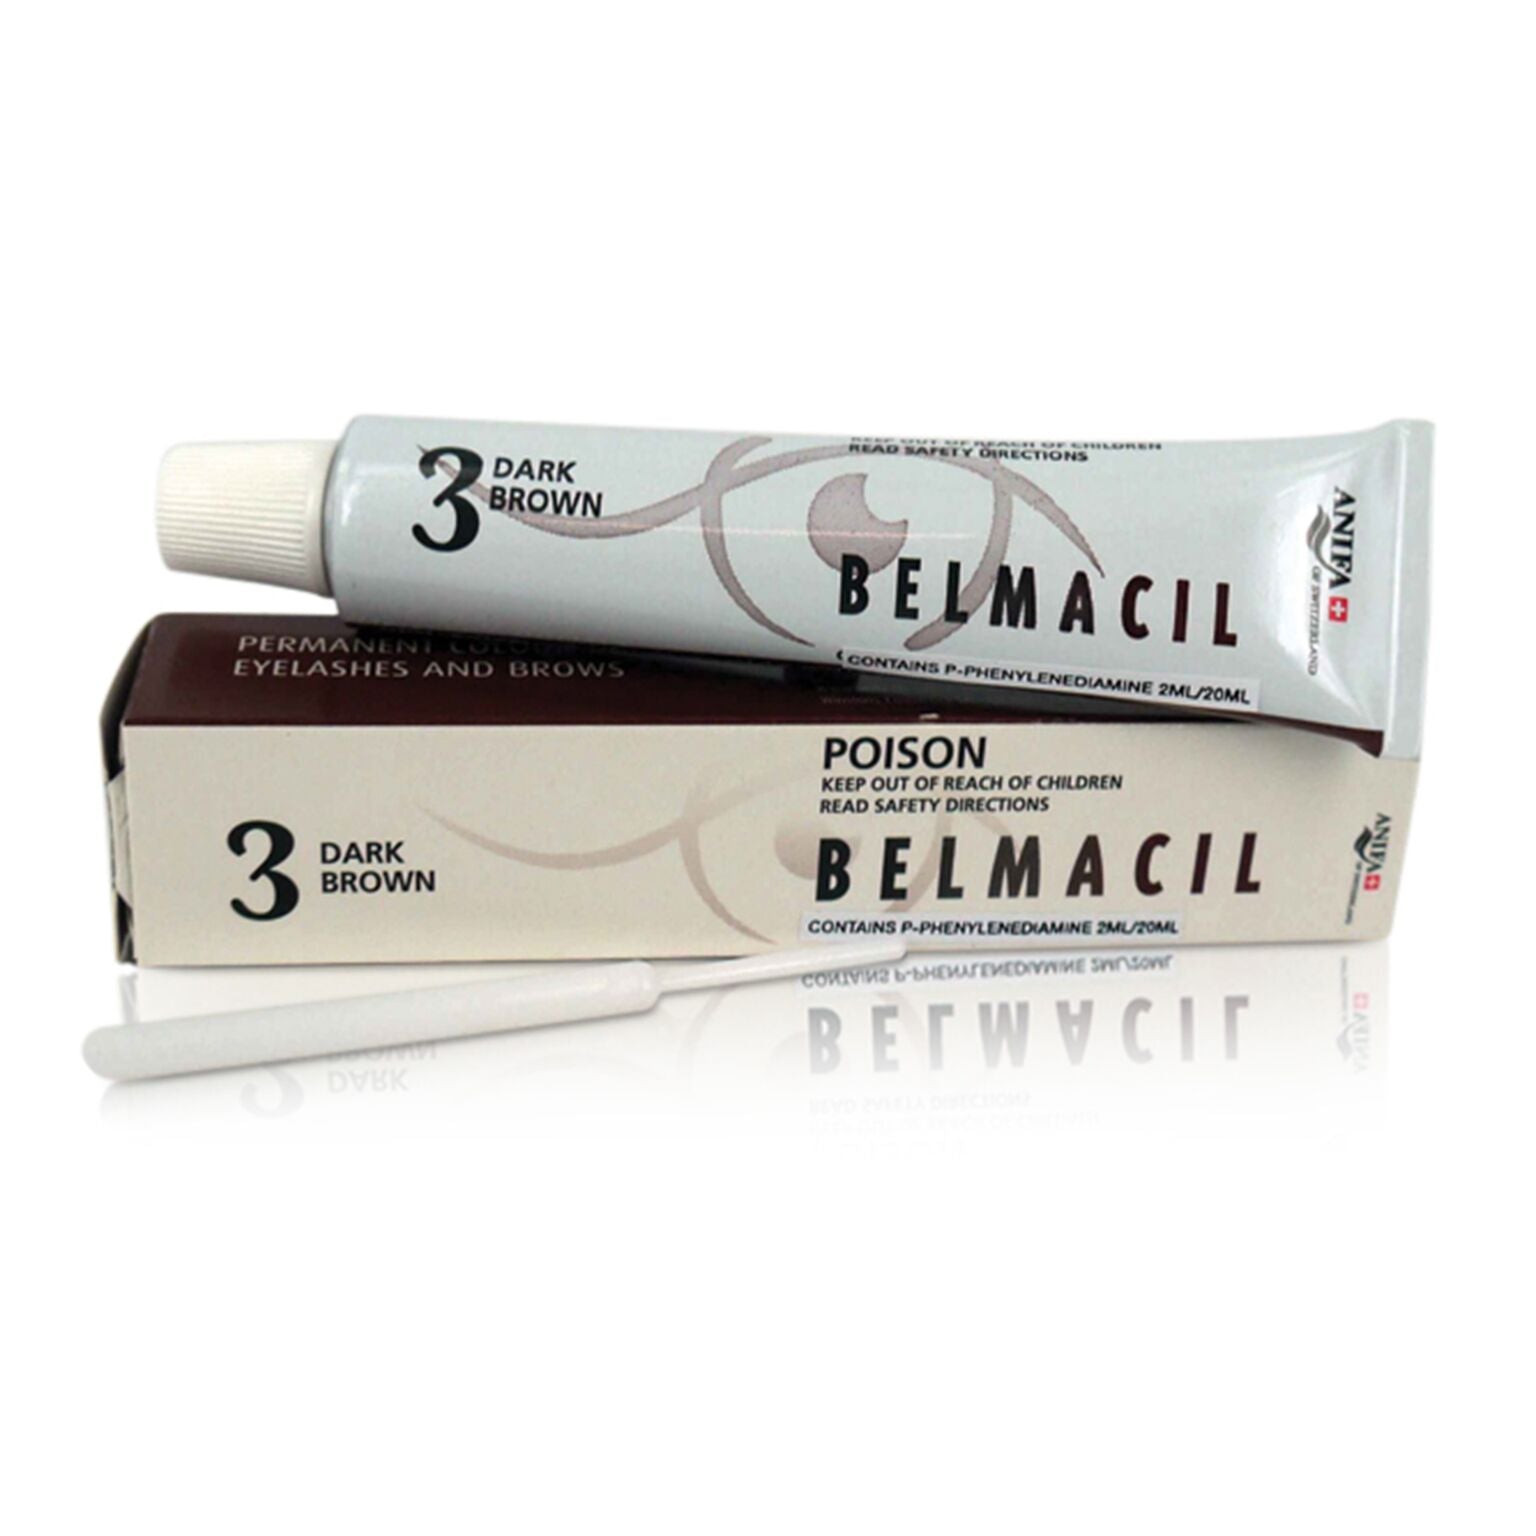 Belmacil Tint Kit - Full size Pack